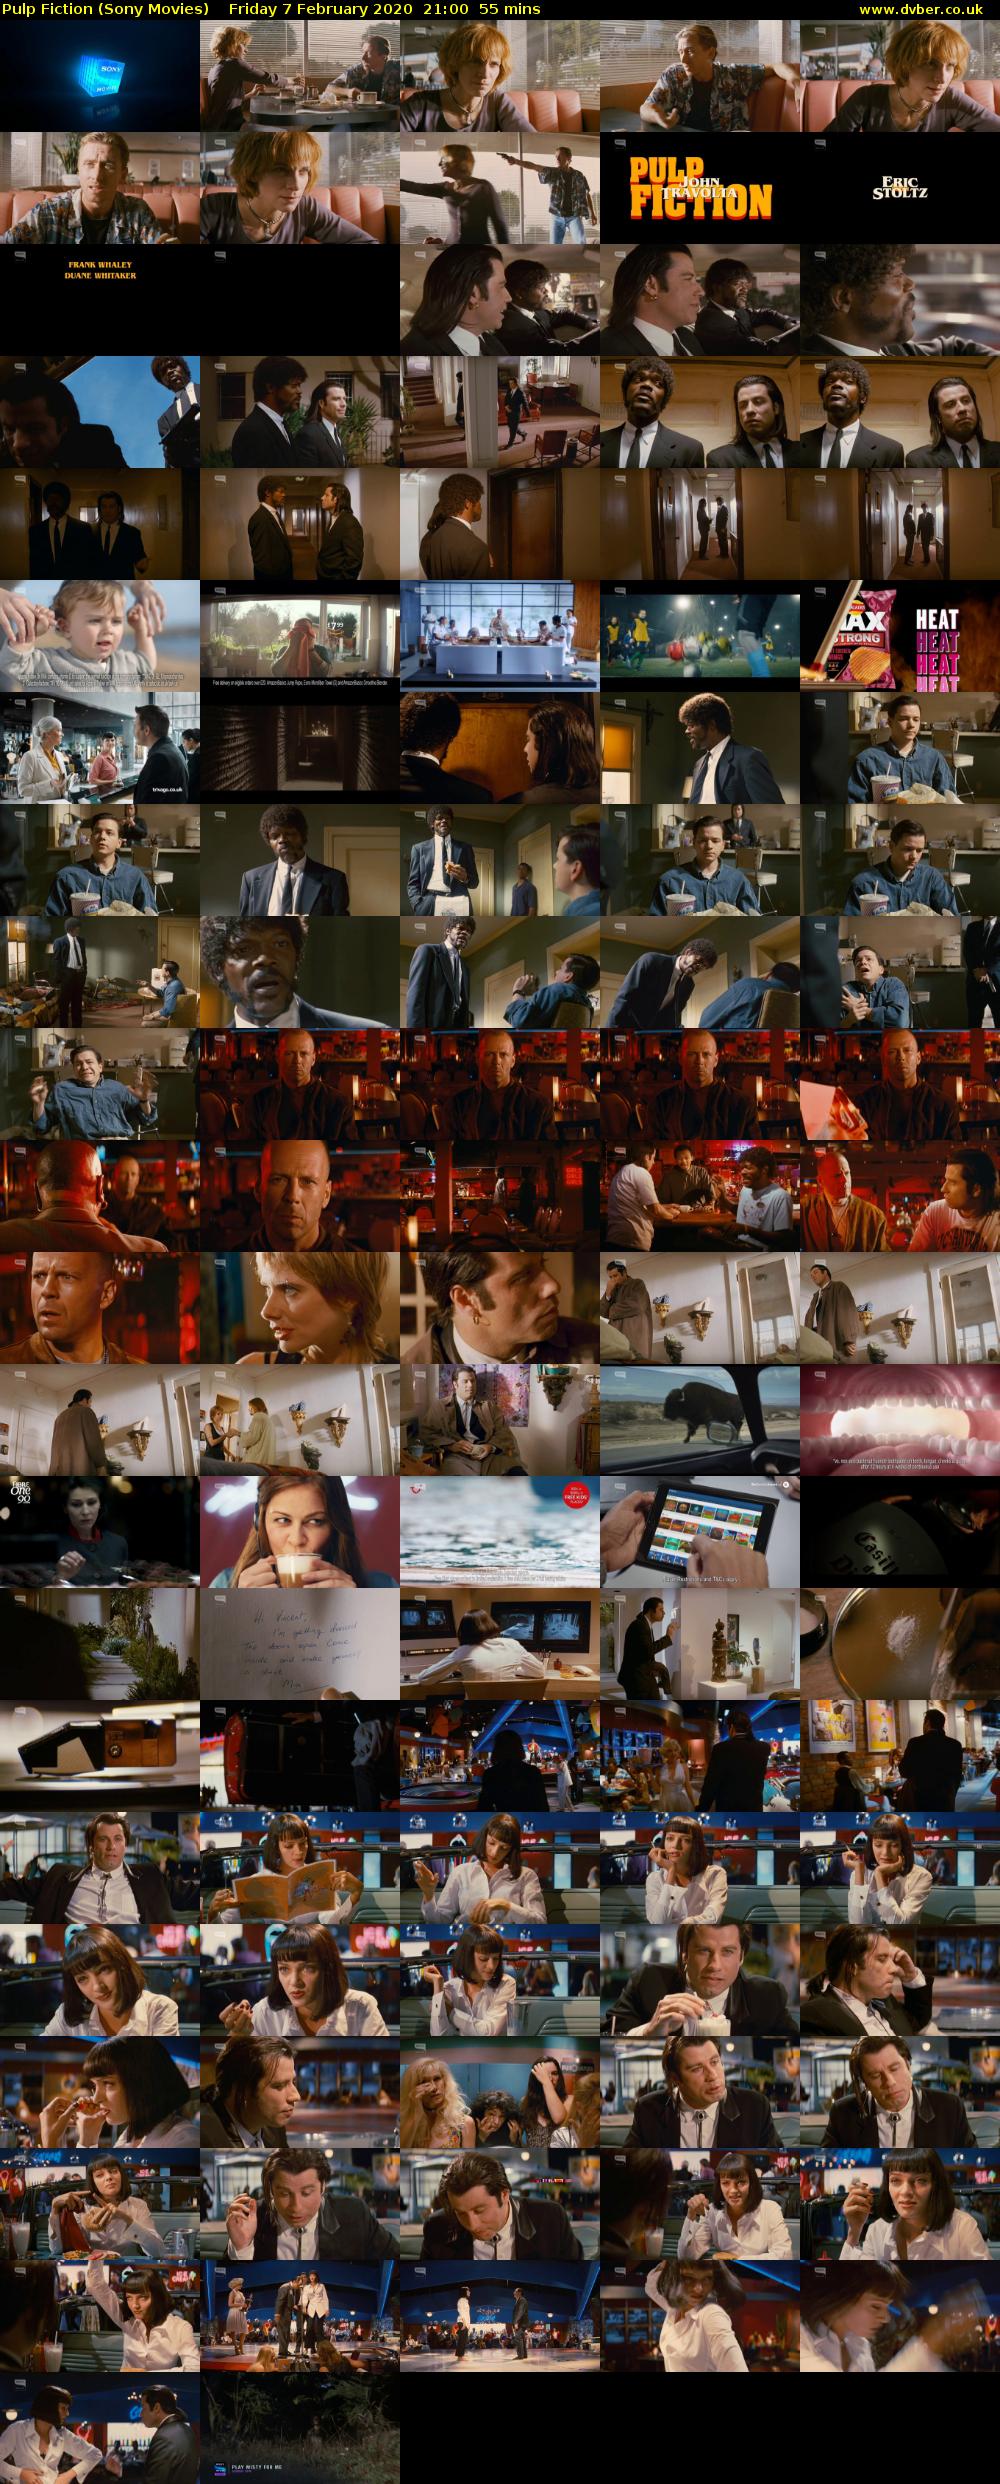 Pulp Fiction (Sony Movies) Friday 7 February 2020 21:00 - 21:55